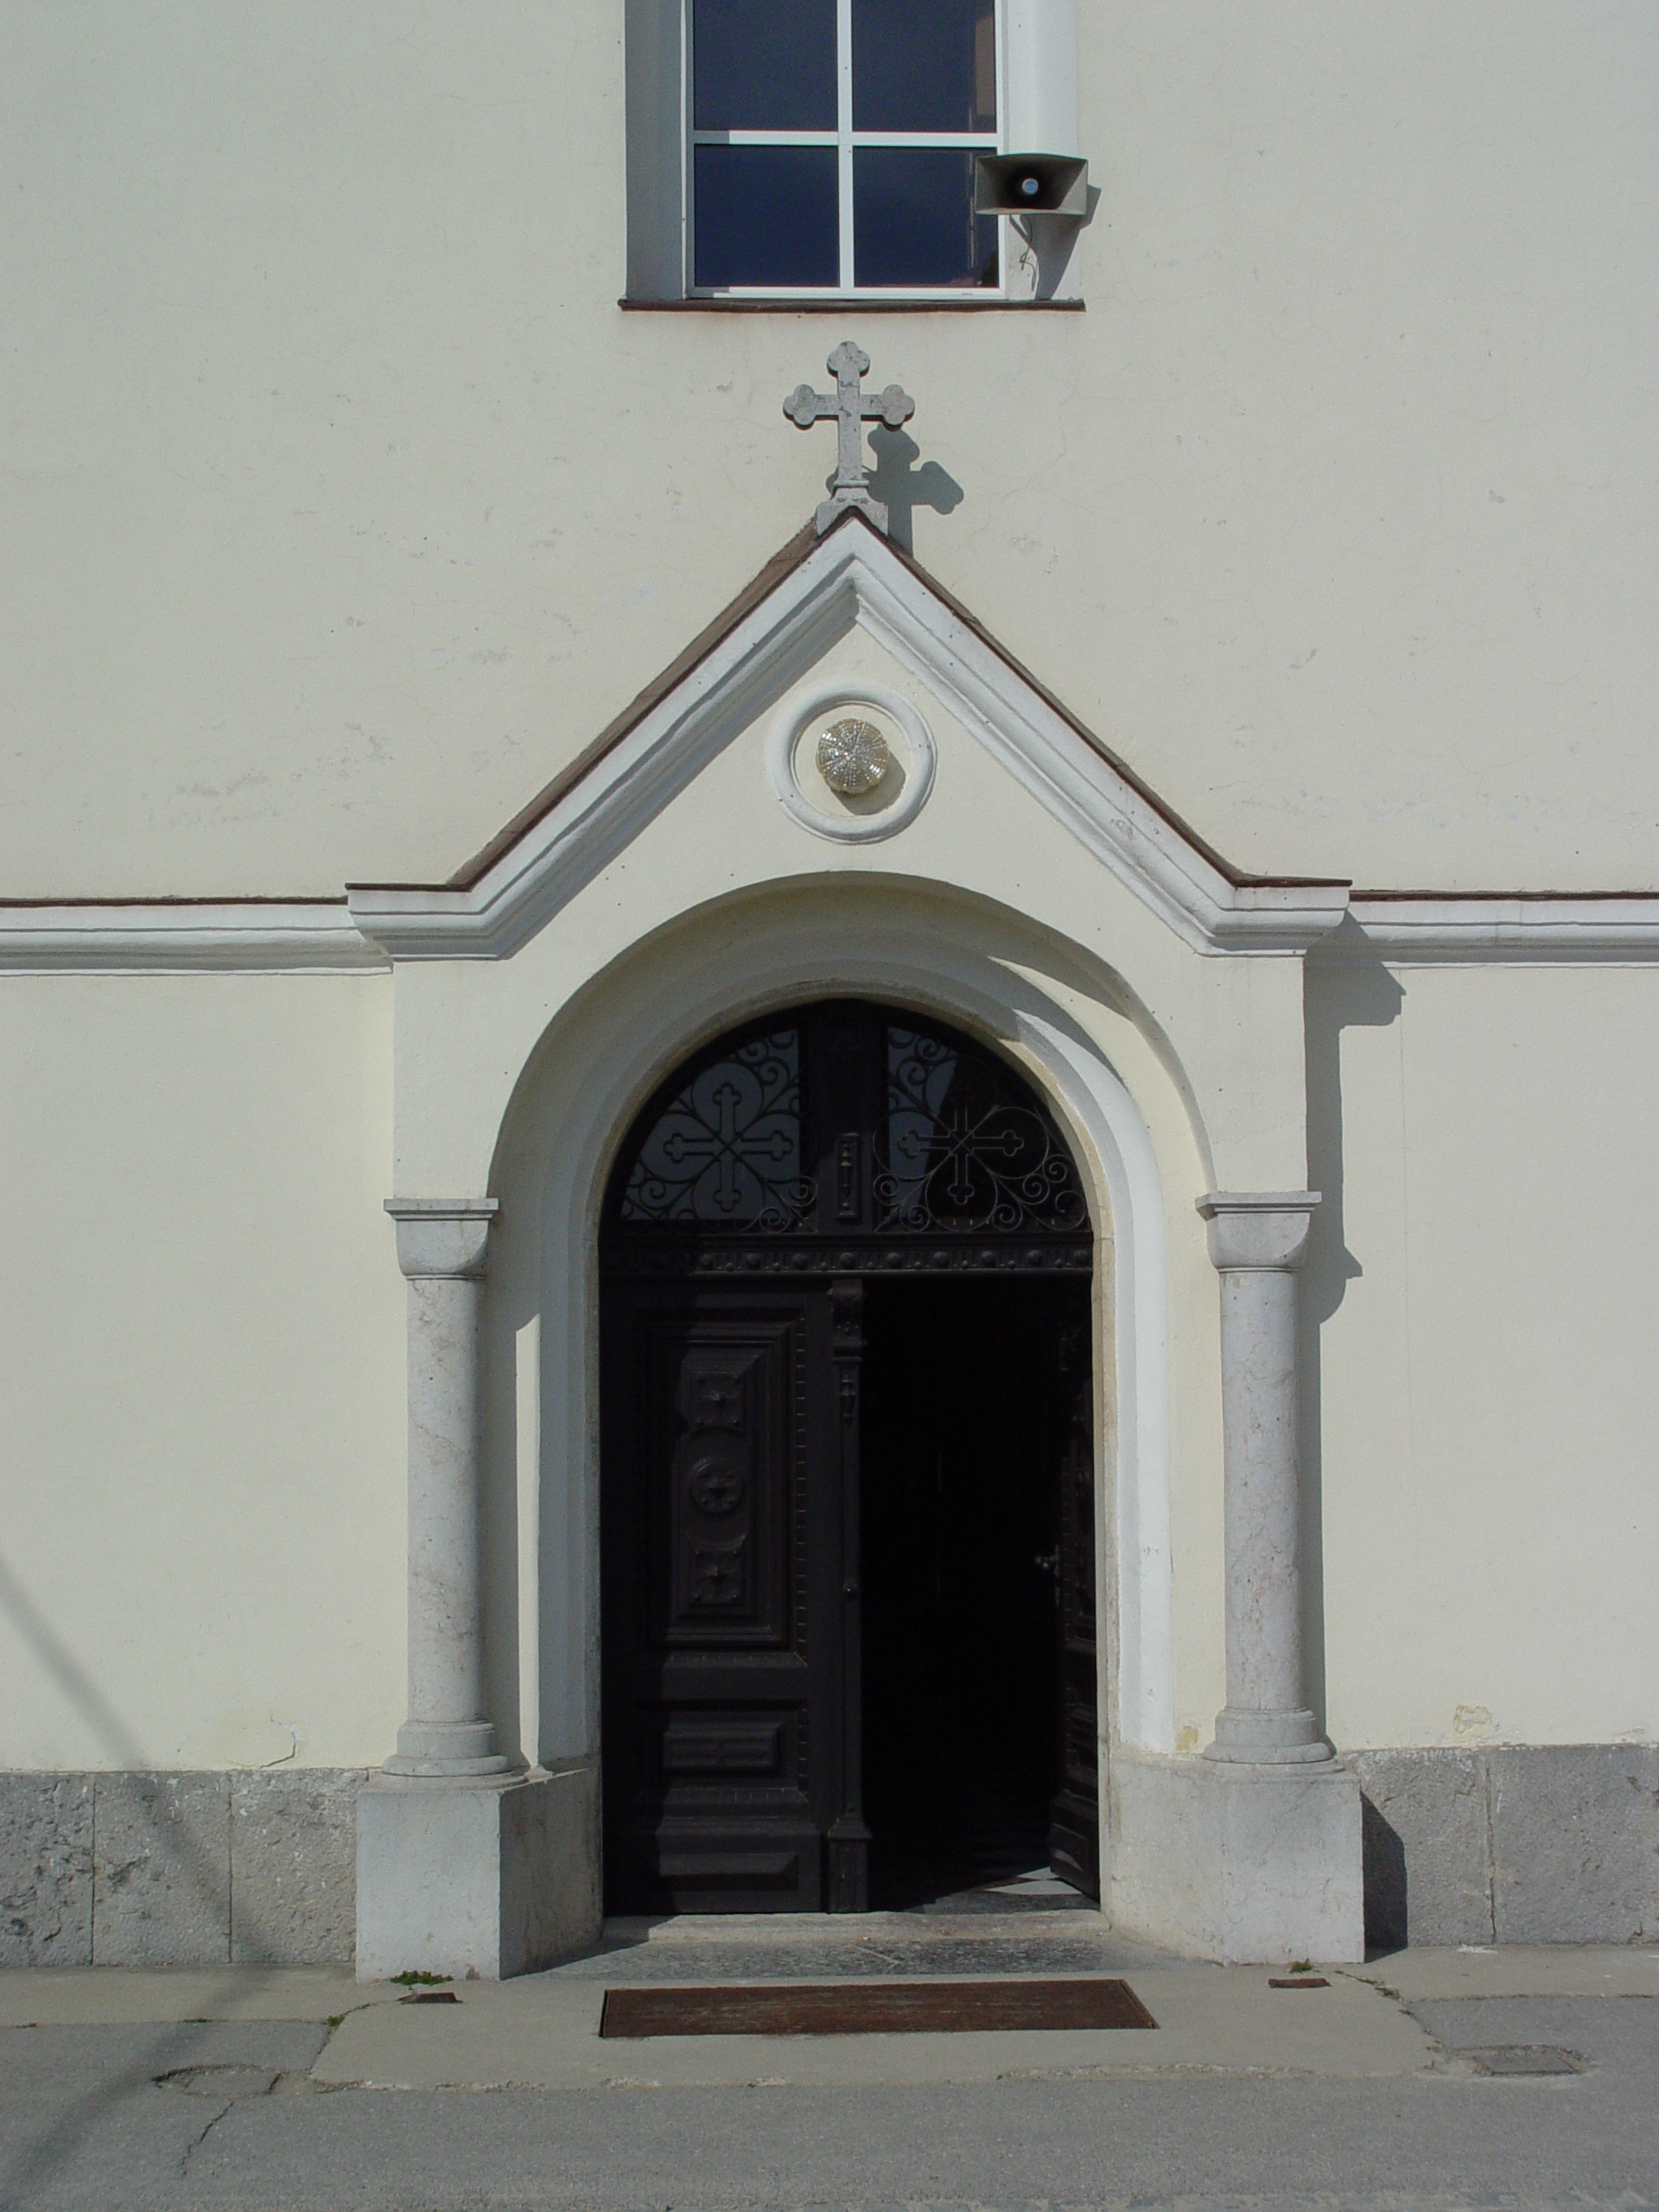 Vhod v cerkev s pravilno oblikovanim križem.